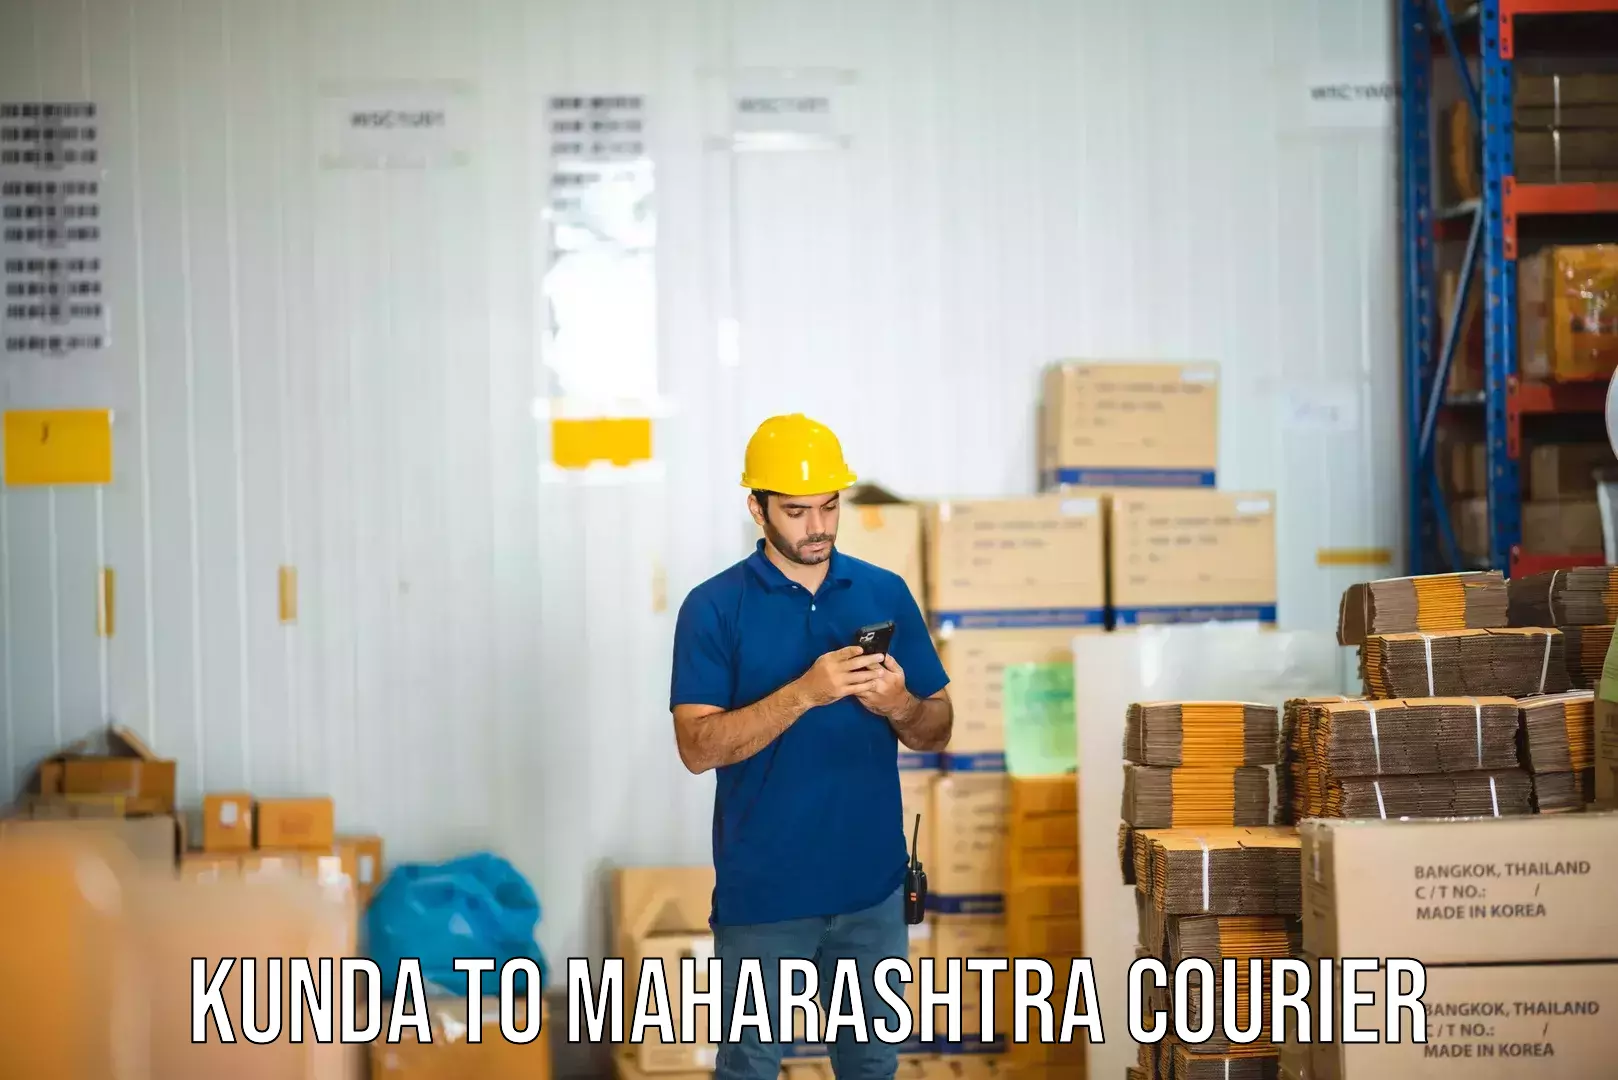 Fast delivery service Kunda to Maharashtra